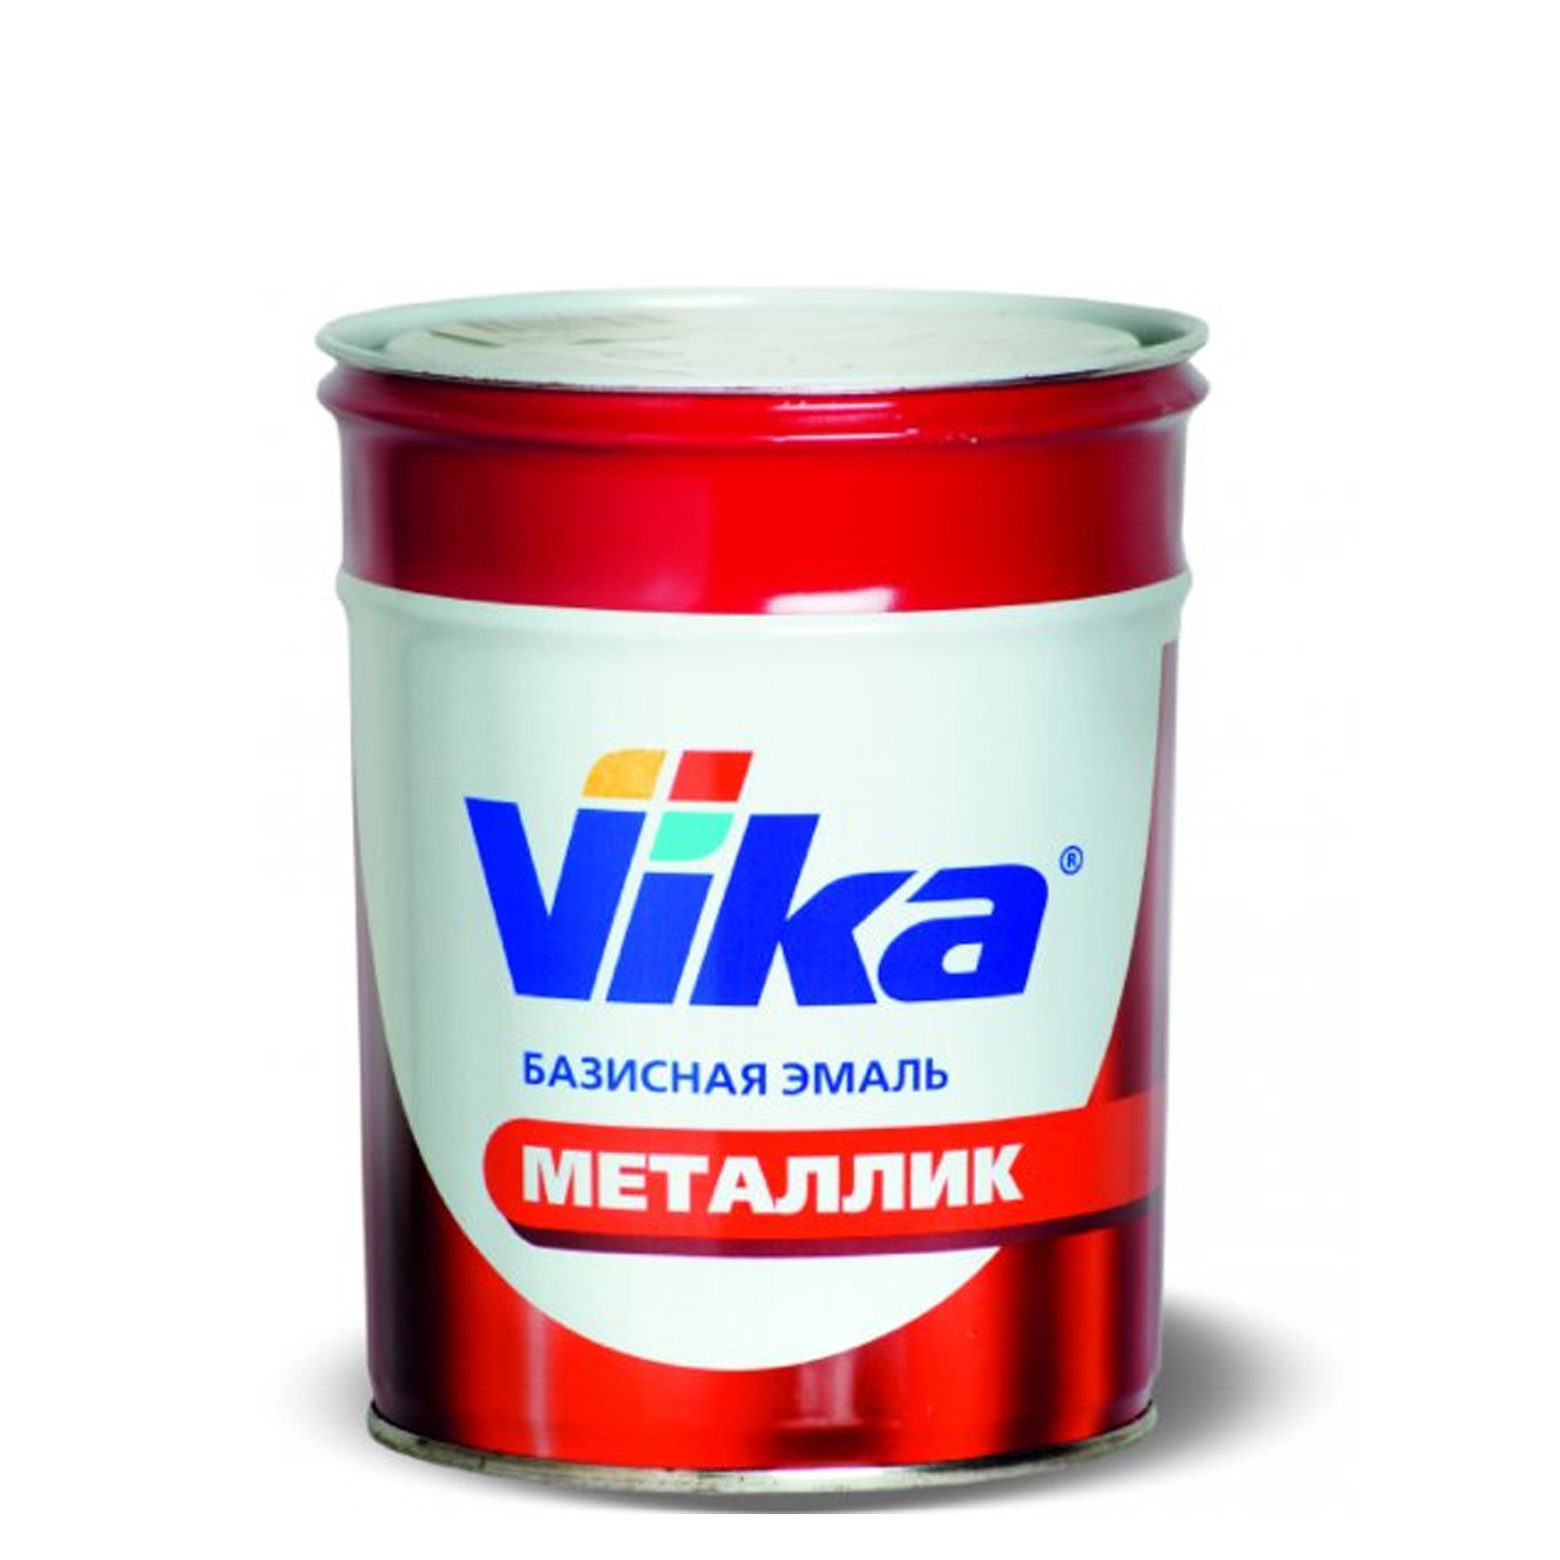 Фото 1 - Автоэмаль Металлик, цвет 490 Астероид, профессиональная базовая, - 0,9 кг Vika/Вика.